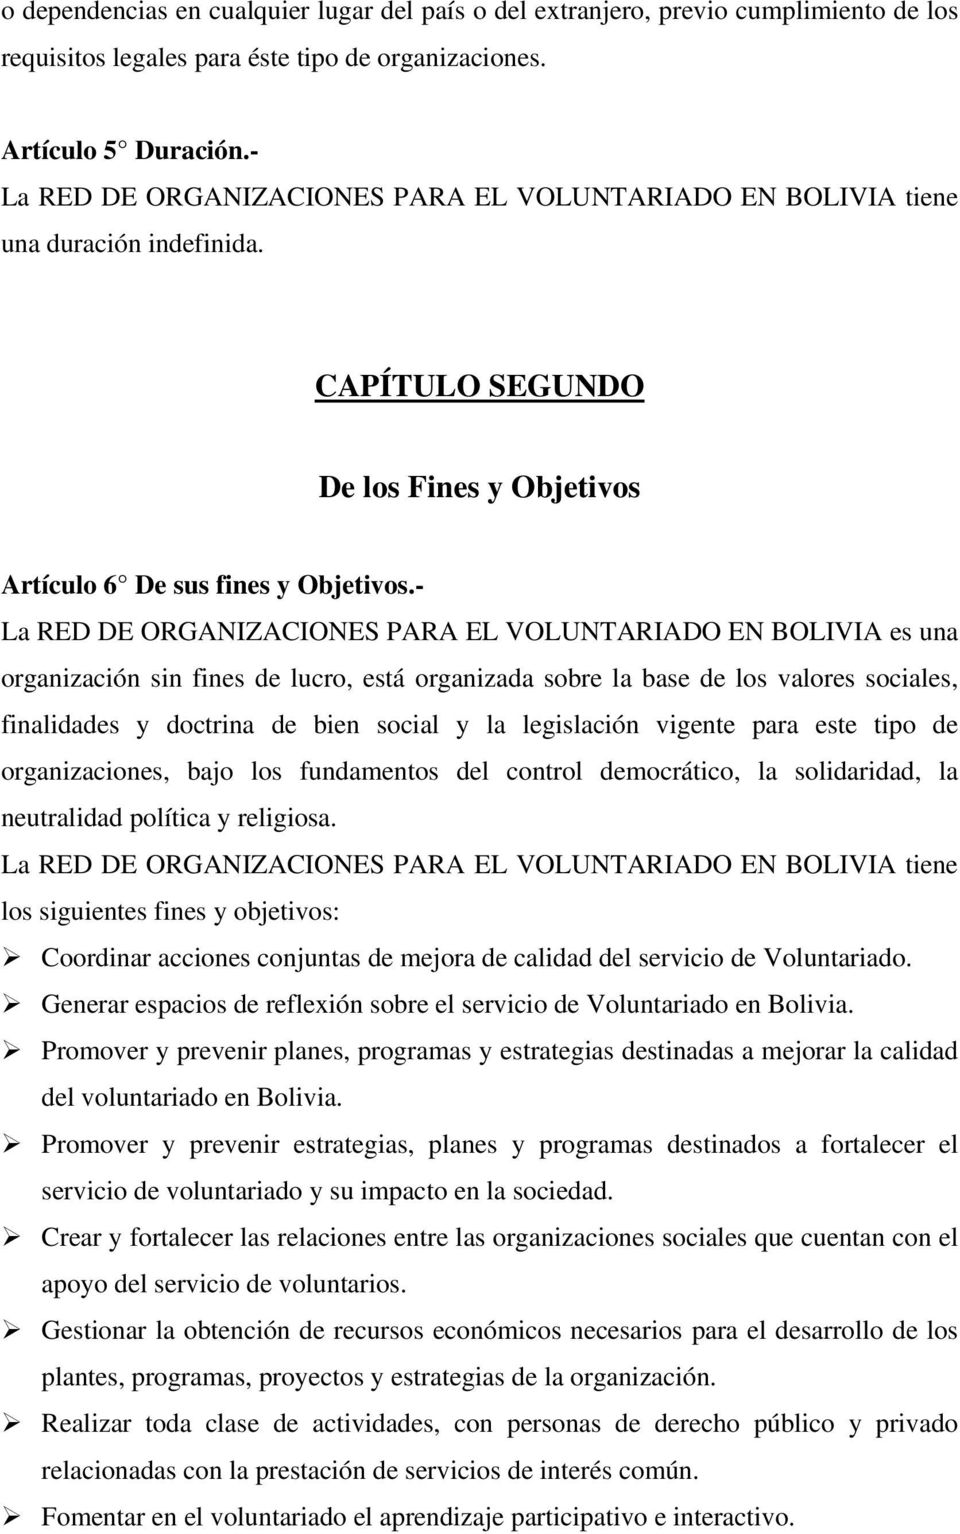 - La RED DE ORGANIZACIONES PARA EL VOLUNTARIADO EN BOLIVIA es una organización sin fines de lucro, está organizada sobre la base de los valores sociales, finalidades y doctrina de bien social y la